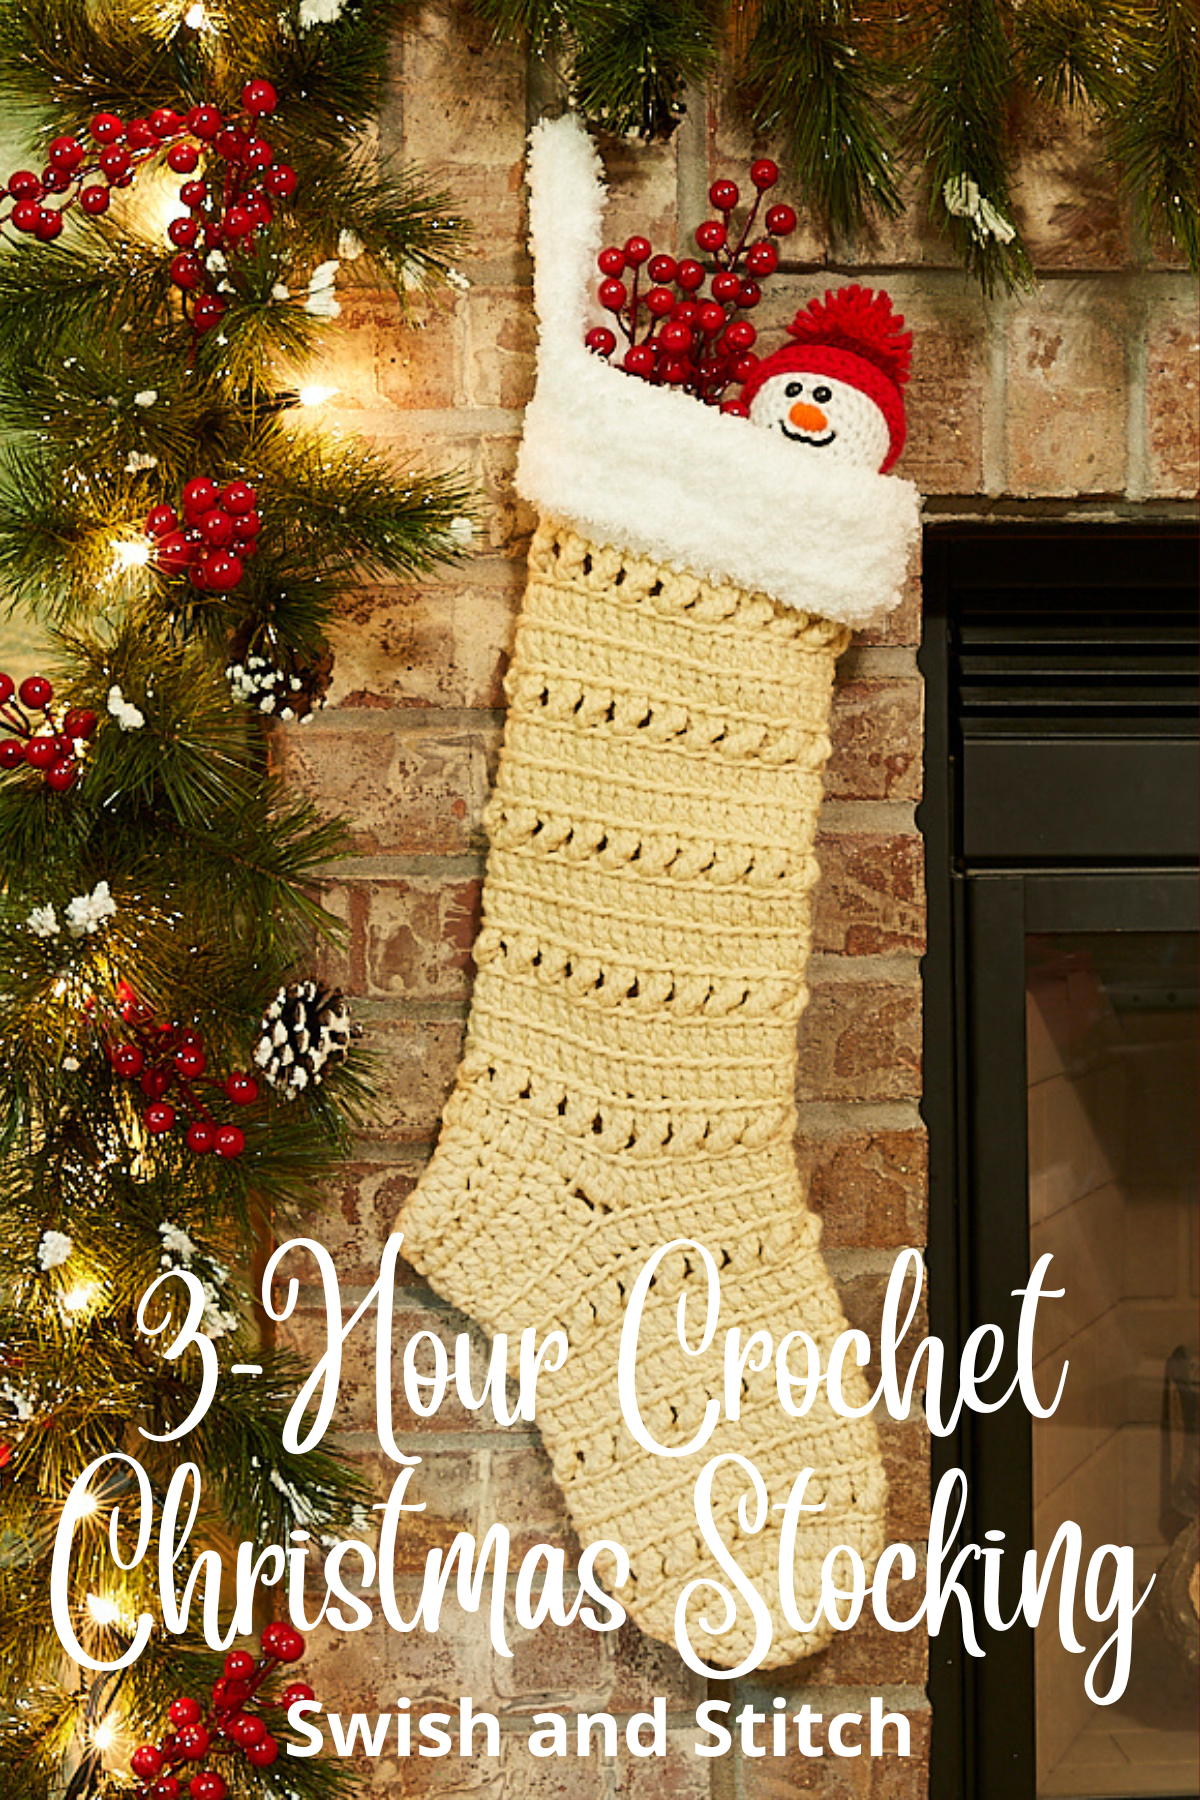 Silverthorne Crochet Christmas Stocking - Pinterest Image 